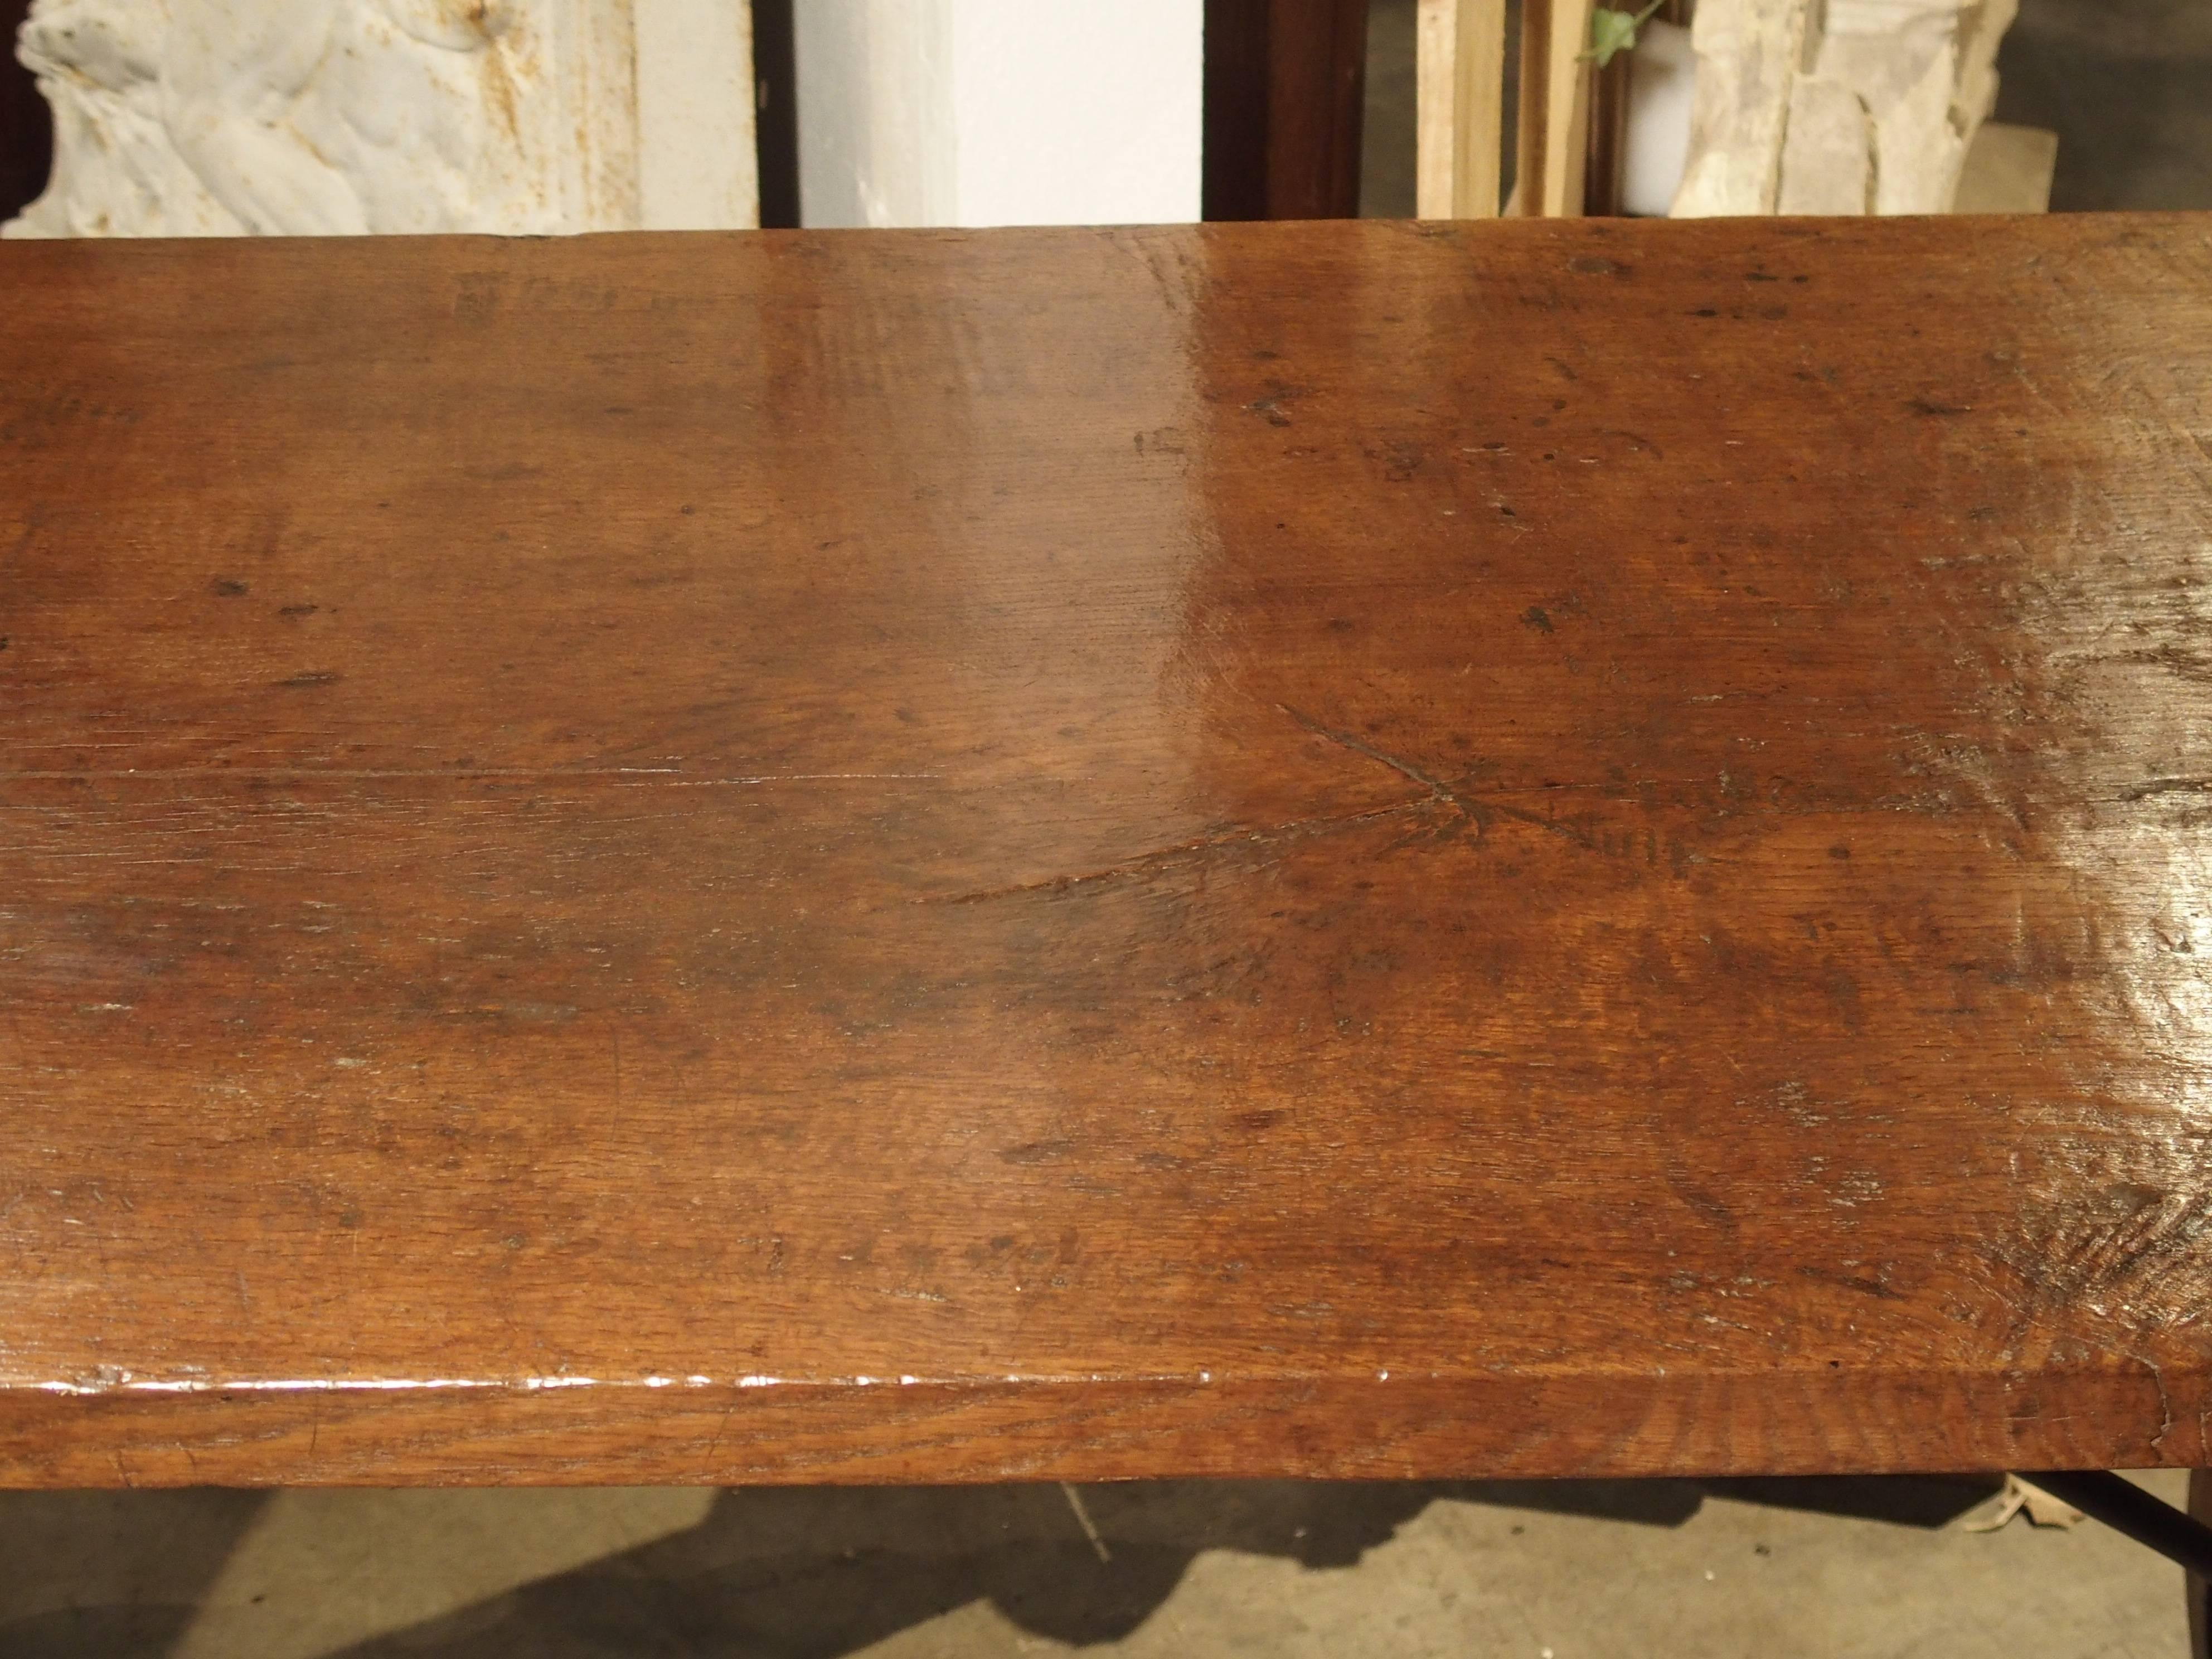 Cette rare table de réfectoire espagnole du XVIIIe siècle en bois de noyer et de chêne a un plateau fait d'une seule pièce de bois. L'avancée du plateau permet de s'asseoir très confortablement aux deux extrémités. Les pieds, plus encore que